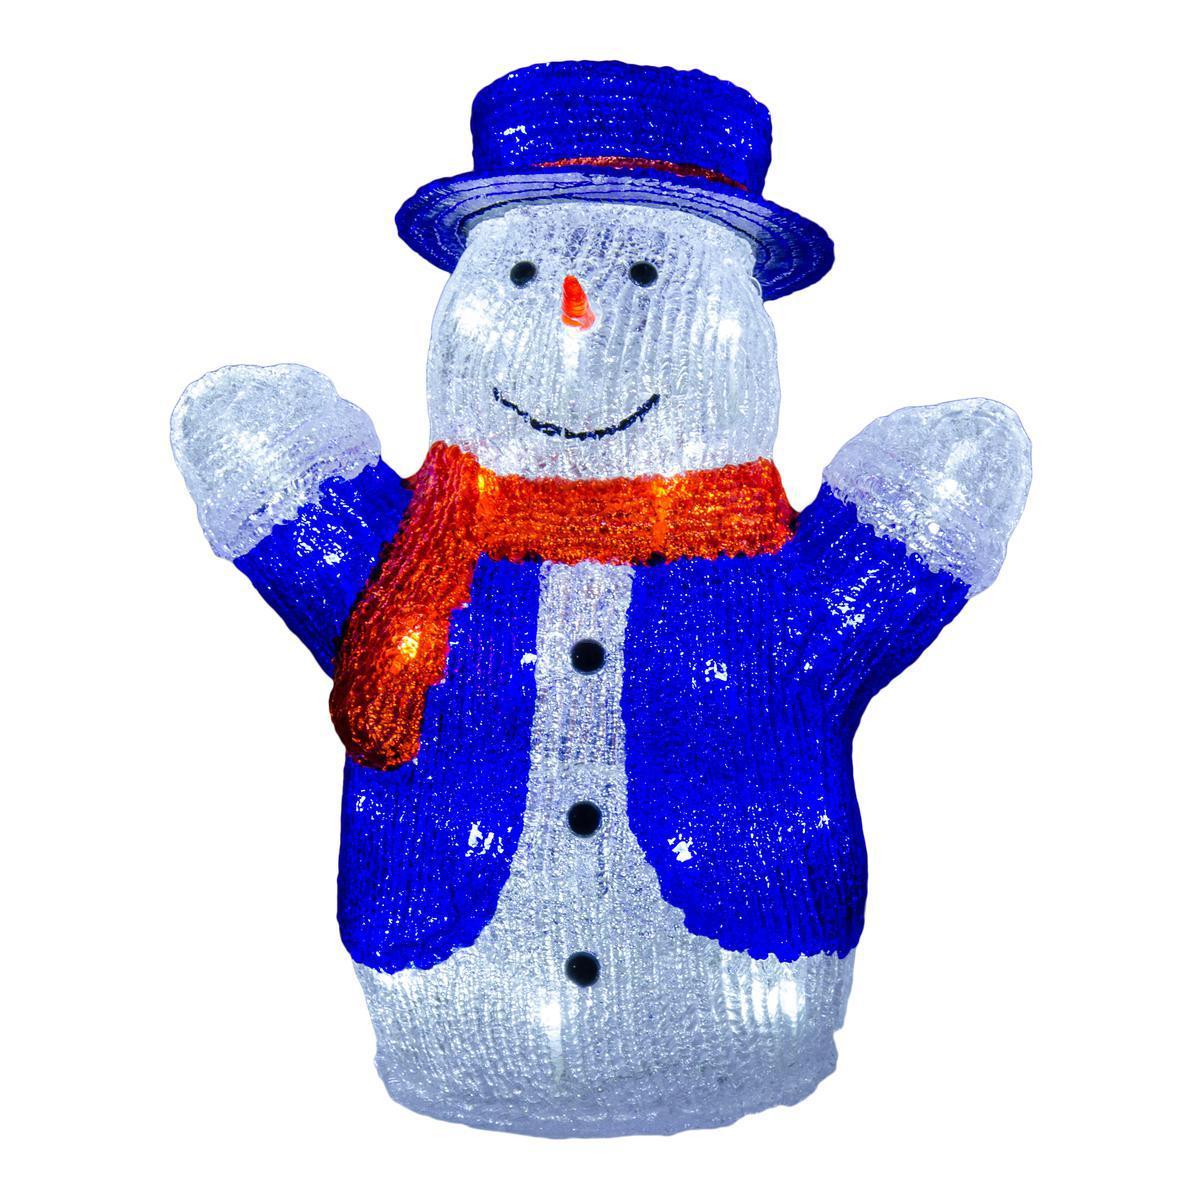 Bonhomme de neige électrique lumineux - 28 x 18 x H 33 cm - Multicolore